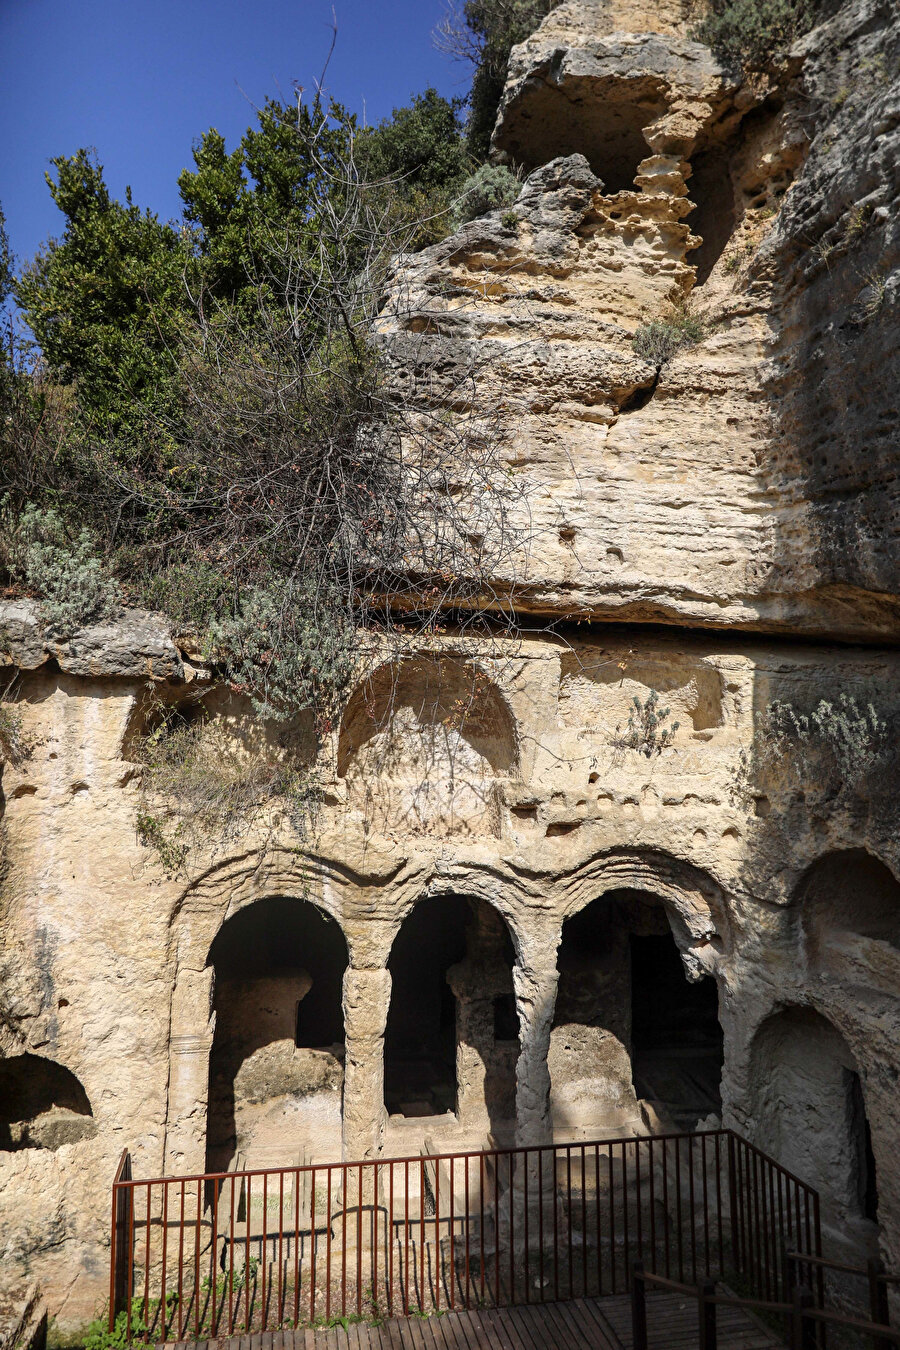 Tünelin deniz tarafındaki girişine göre sağ tarafta 100 metre kadar uzaklıkta bulunan Beşikli Mağara, kaya mezarlarının en geniş ve en ünlülerinden olup, içerisinde bölümler halinde on iki mezar vardır. Mezarlar birbirlerinden duvarlar ile ayrılmıştır. Bu taş mezarlar, taş sütunlar ve kemerlerin birbirine bağladığı bölümler halinde olup, yukarıdan aşağıya yine taş merdivenlerle inilmektedir. 